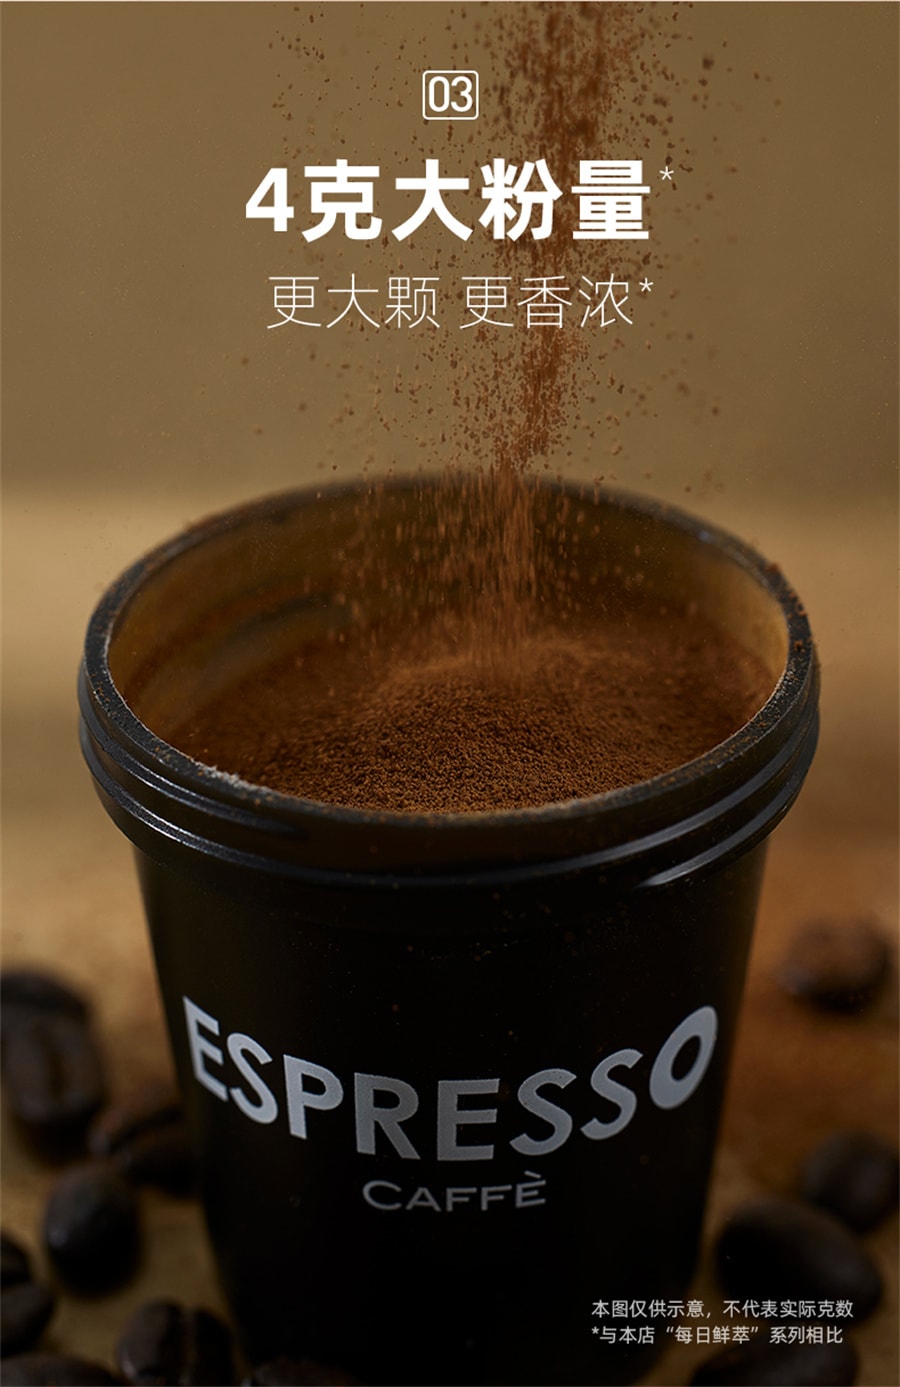 【中国直邮】连咖啡 鲜萃意式浓缩咖啡美式纯黑咖啡速溶咖啡粉意式拿铁 【85% 经典意式】12颗(深烘不酸有焦香)